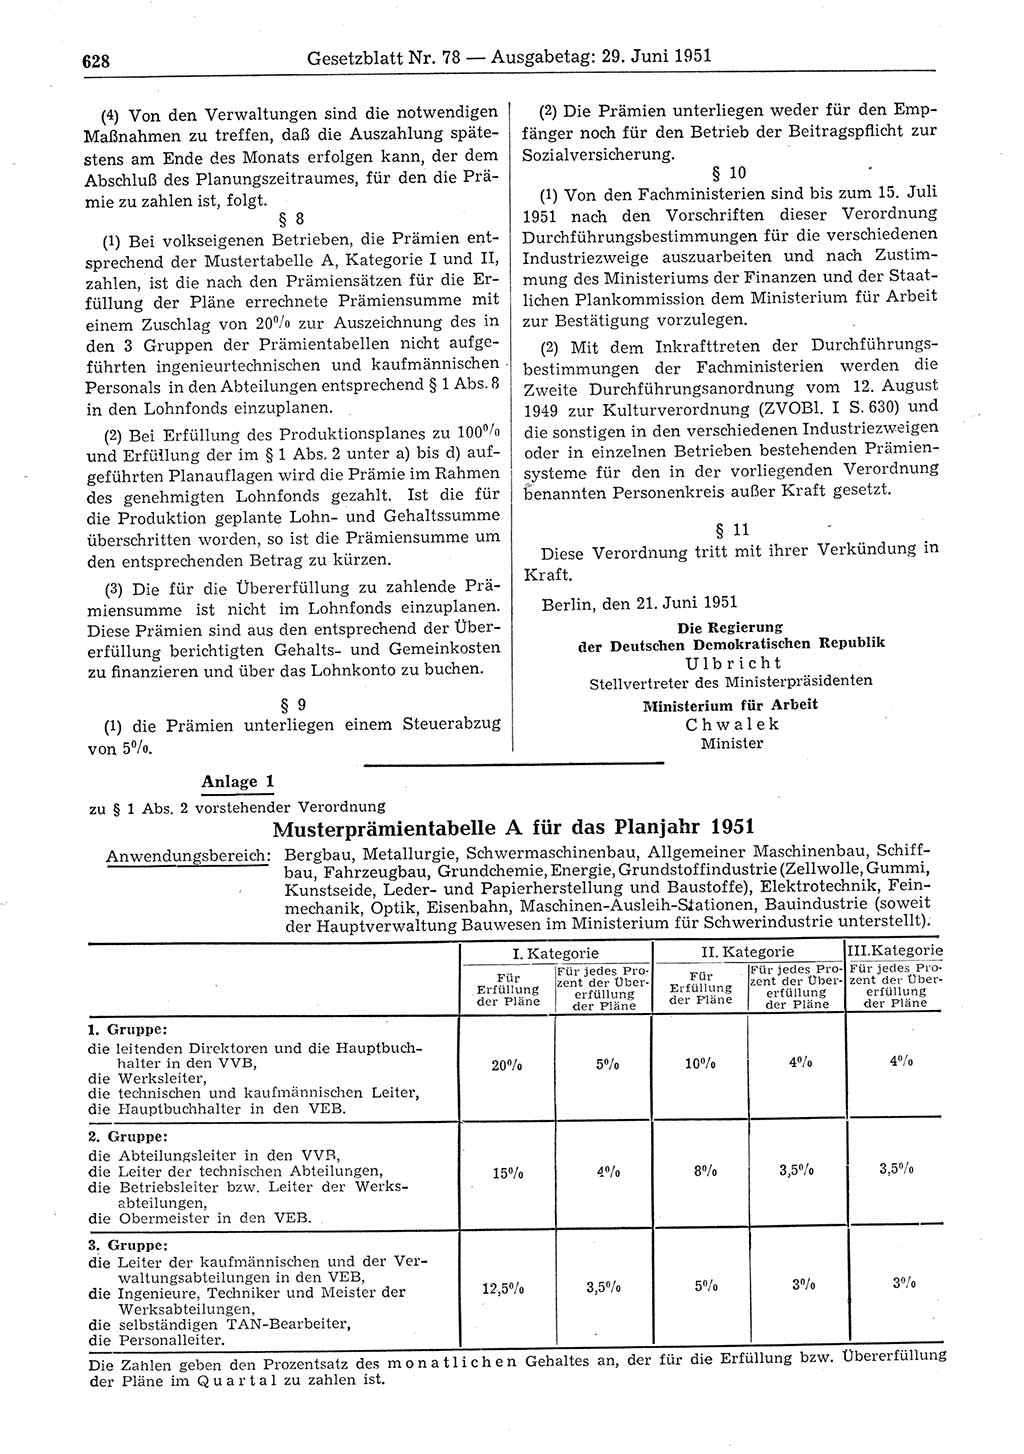 Gesetzblatt (GBl.) der Deutschen Demokratischen Republik (DDR) 1951, Seite 628 (GBl. DDR 1951, S. 628)